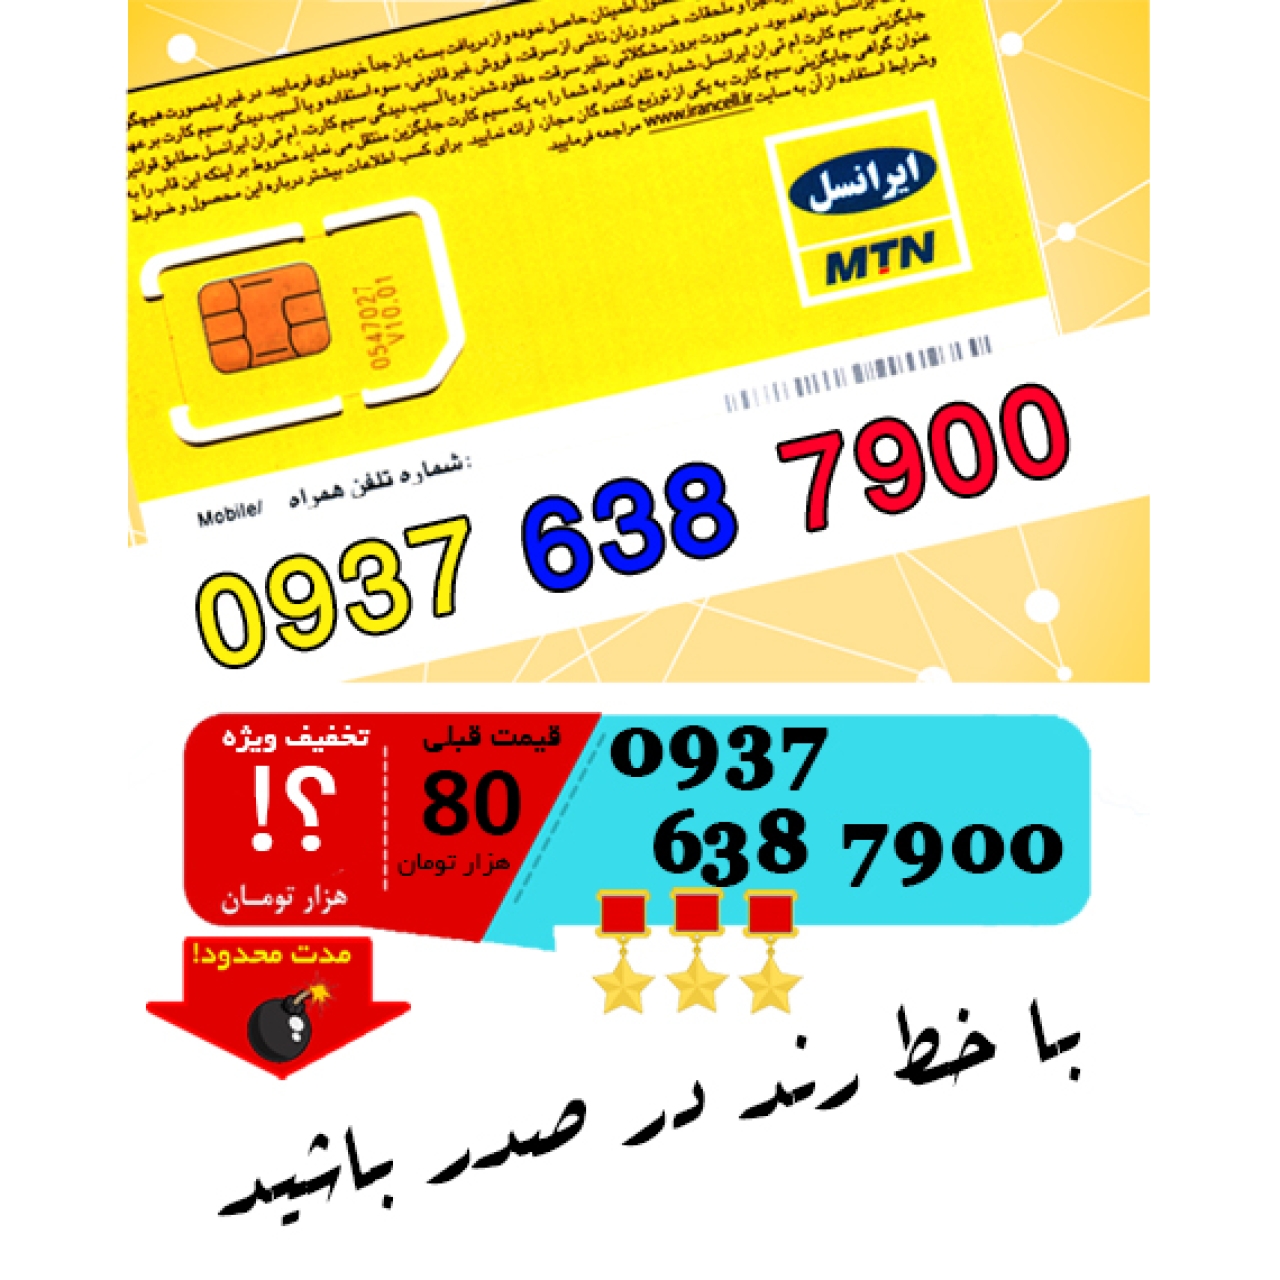 سیم کارت اعتباری ایرانسل 09376387900